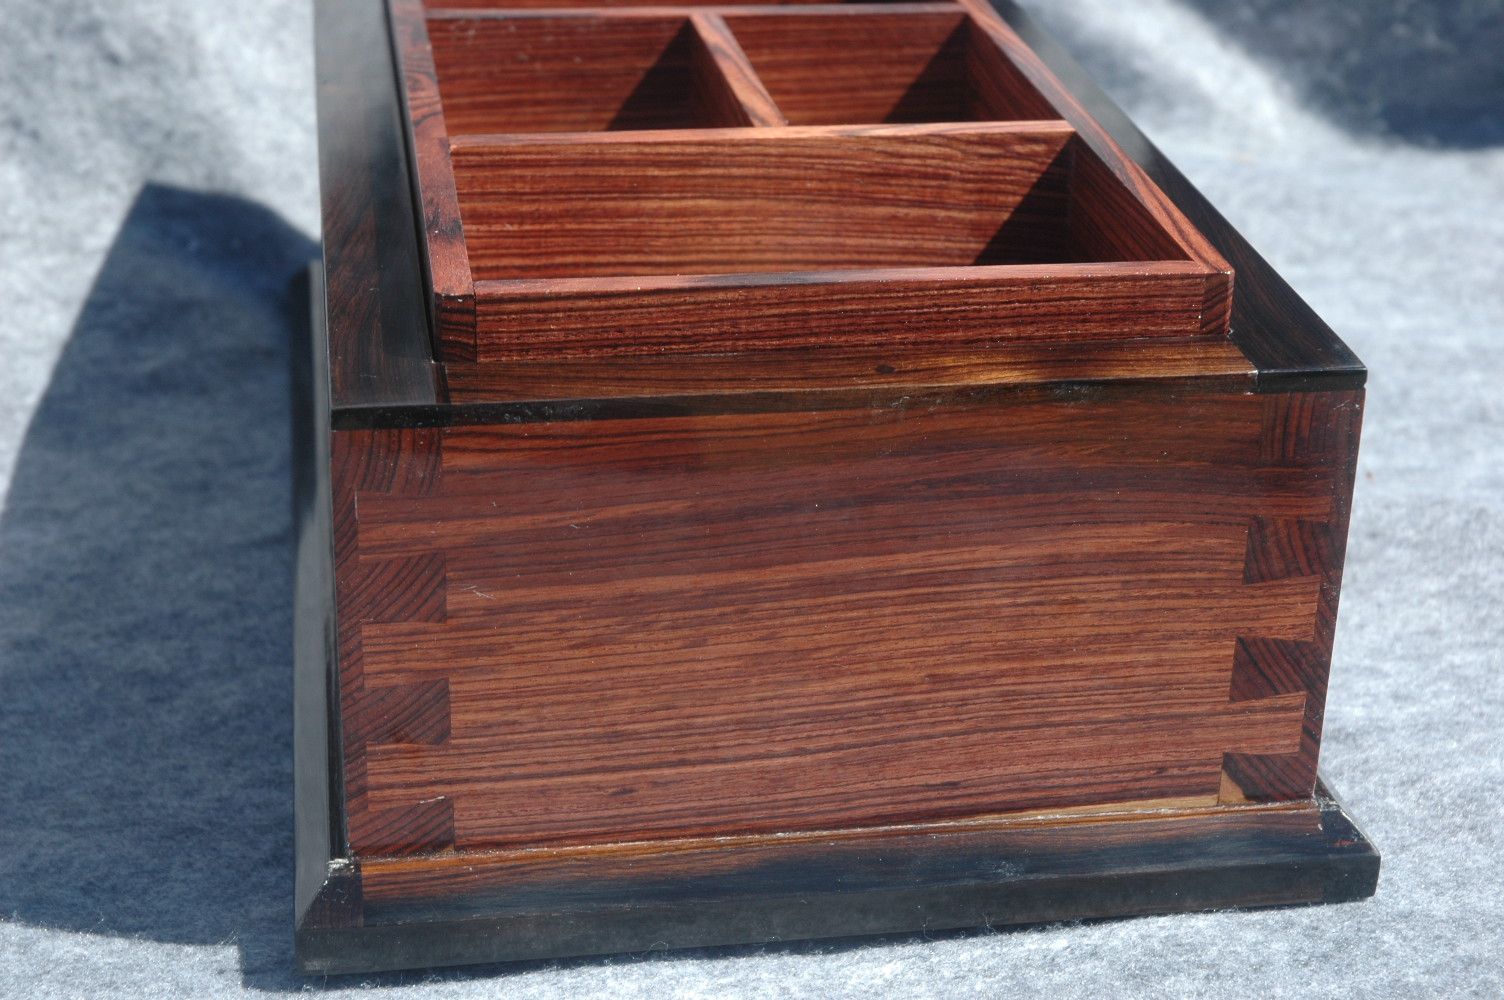 custom handcrafted wood box kingwood ebony trim and tray side